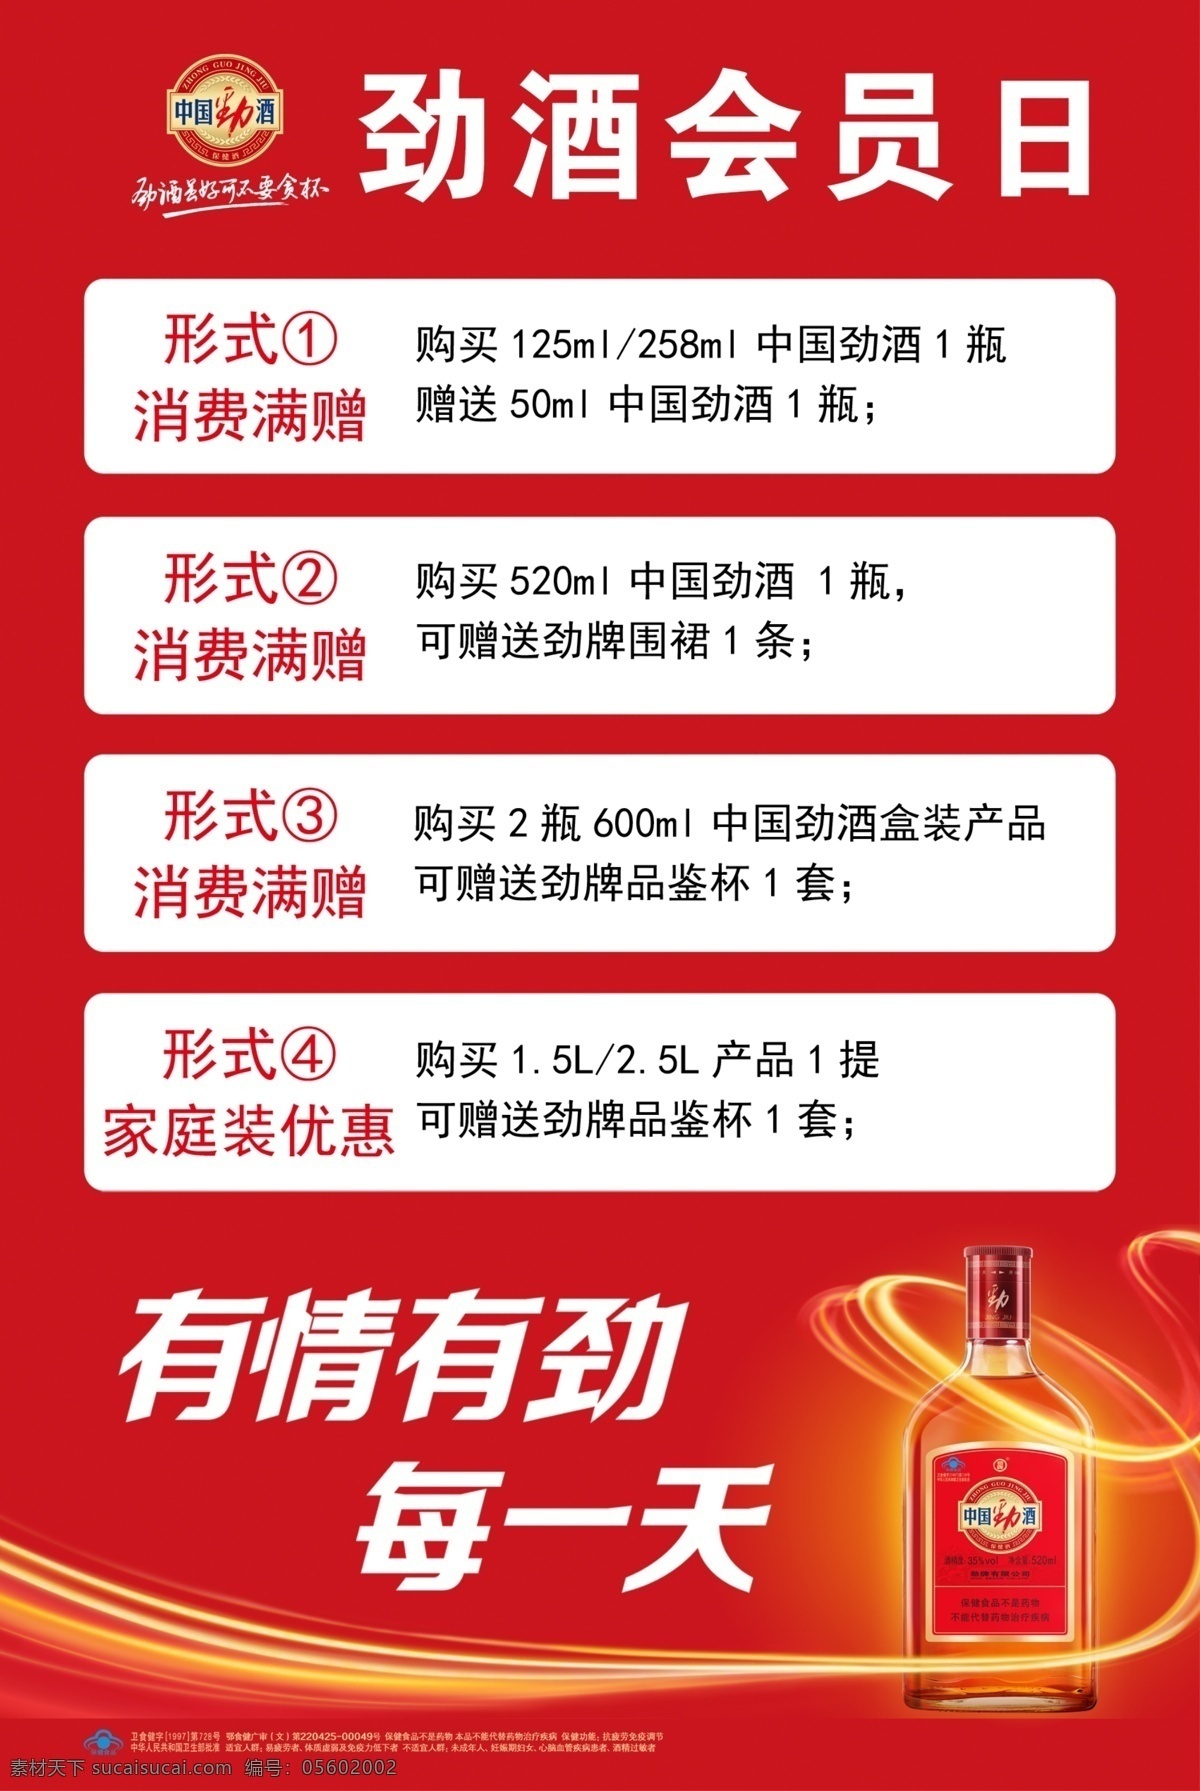 劲 酒 会员 日 中国劲酒 酒瓶 广告语 logo 活动内容 分层